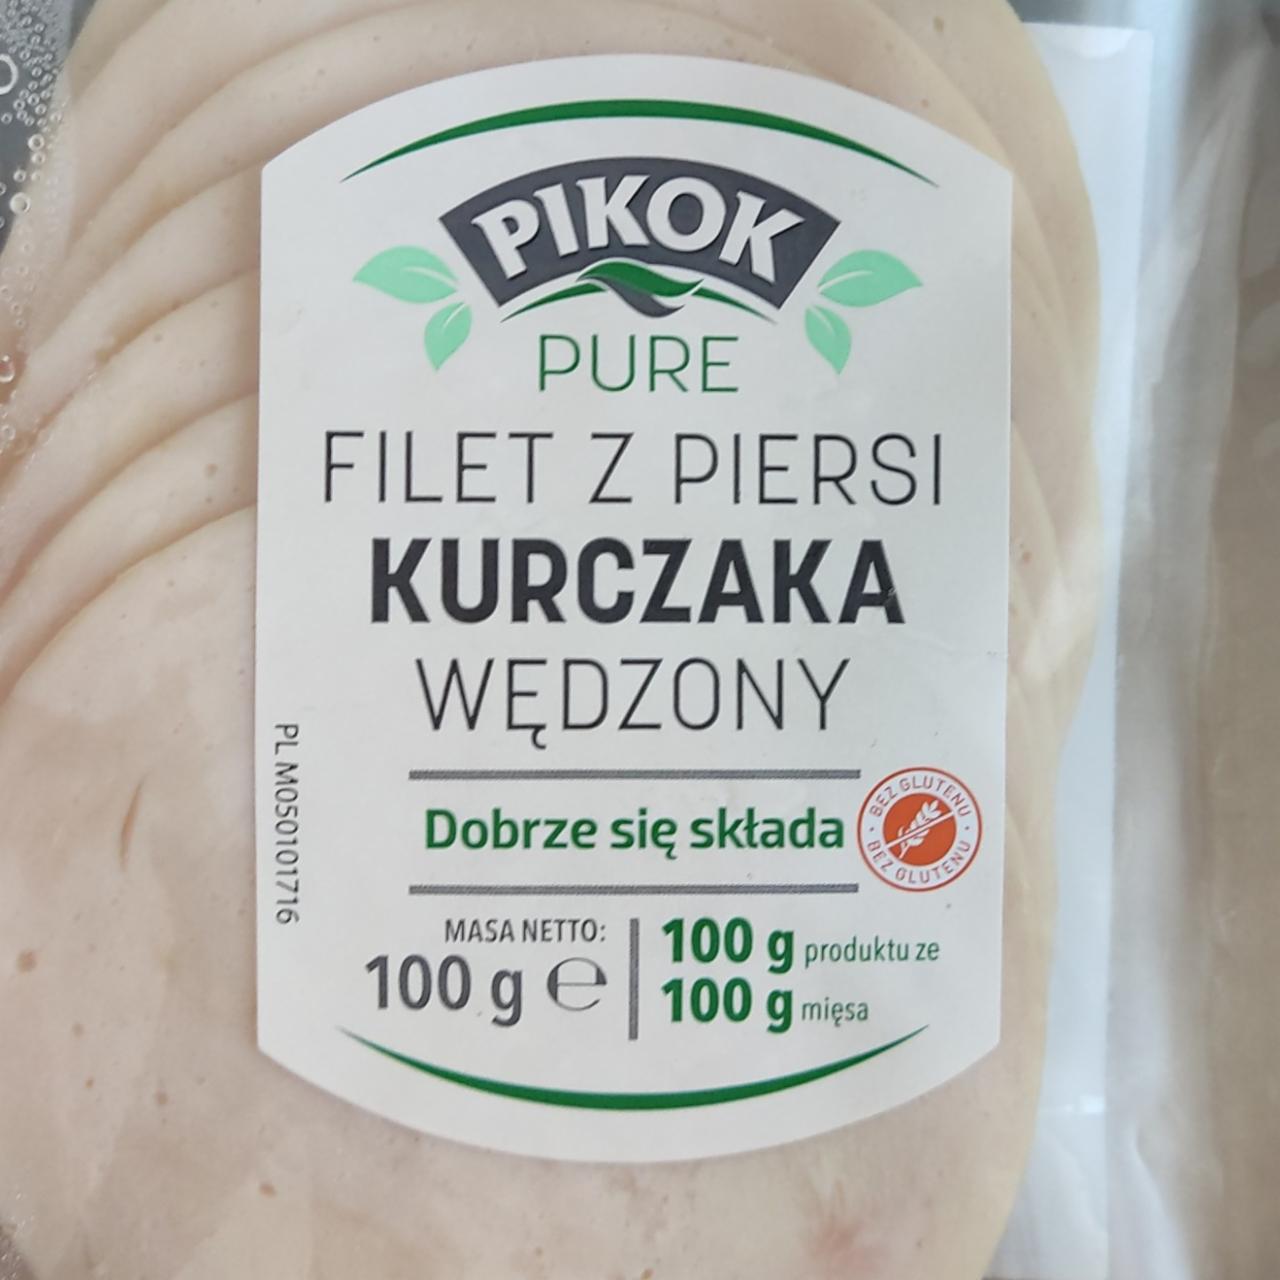 Фото - Filet z piersi kurczaka wędzony Pikok